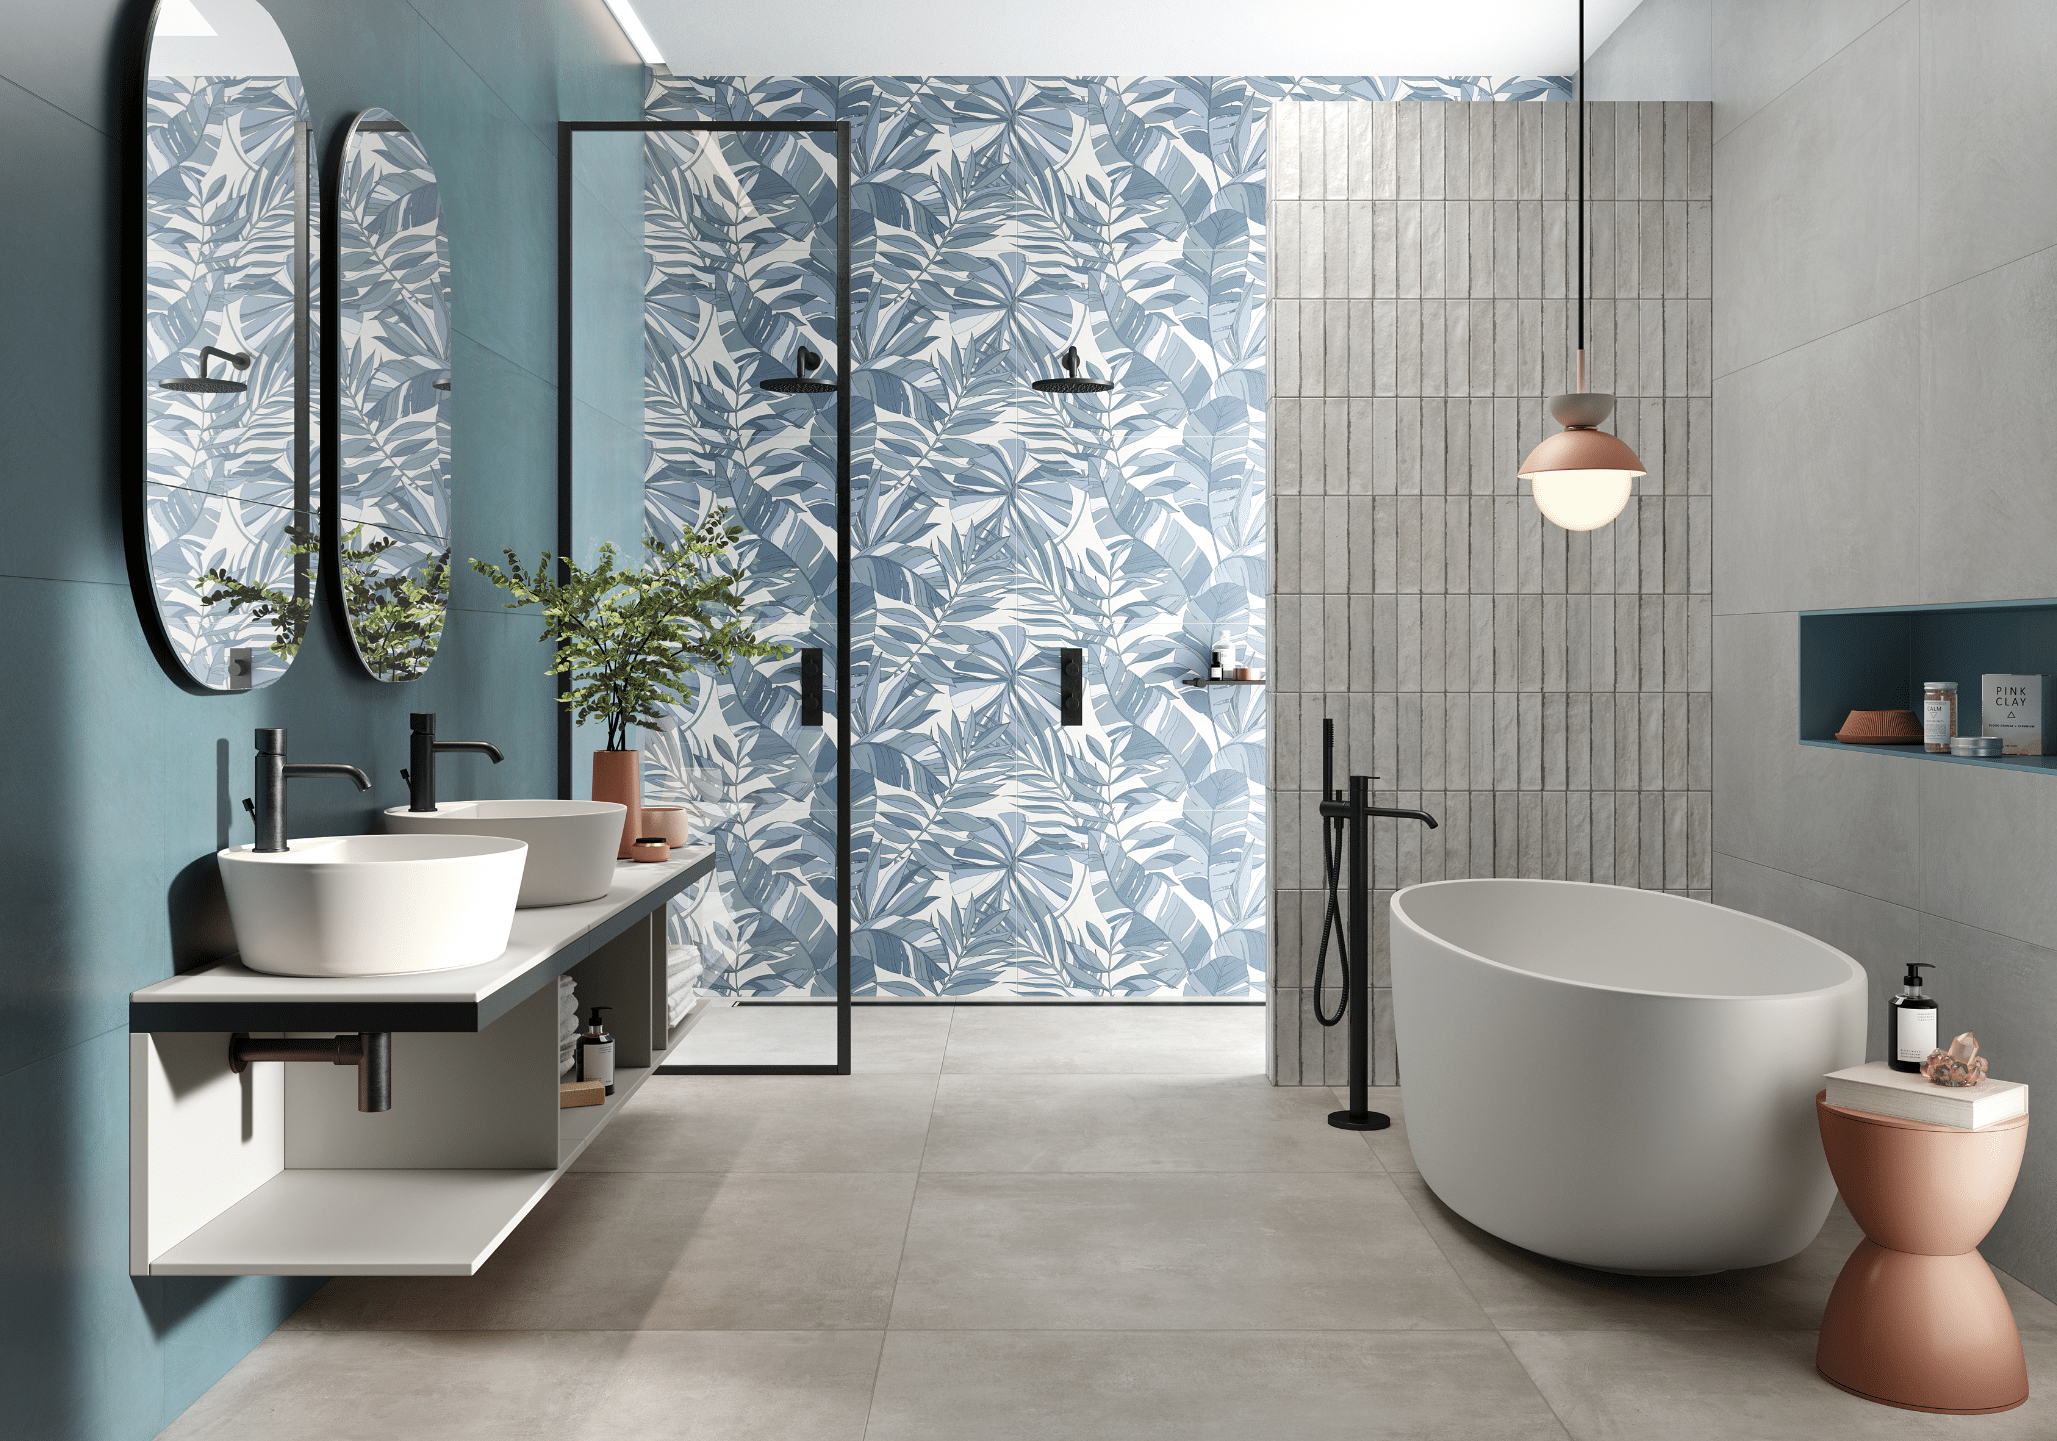 Fliesendorf zeigt ein Badezimmer mit weißen Doppelwaschbecken, zwei ovalen Spiegeln an der Wand, Dusche mit blau gemusterter Wand.